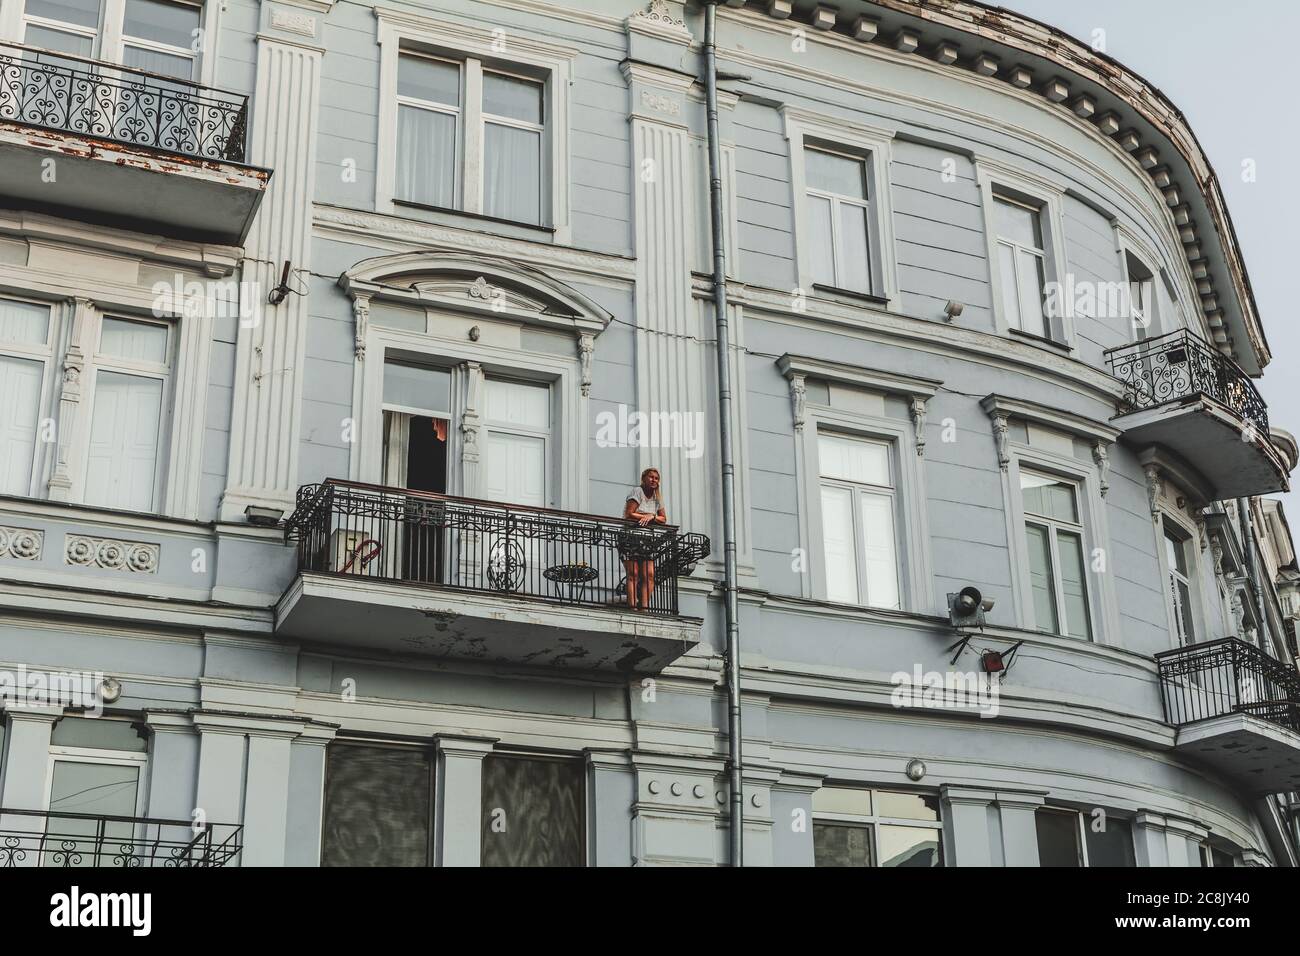 Ukraine, Odessa - 23. August 2019: Mädchen auf dem Balkon eines neoklassizistischen Gebäudes bei Sonnenuntergang. Stockfoto